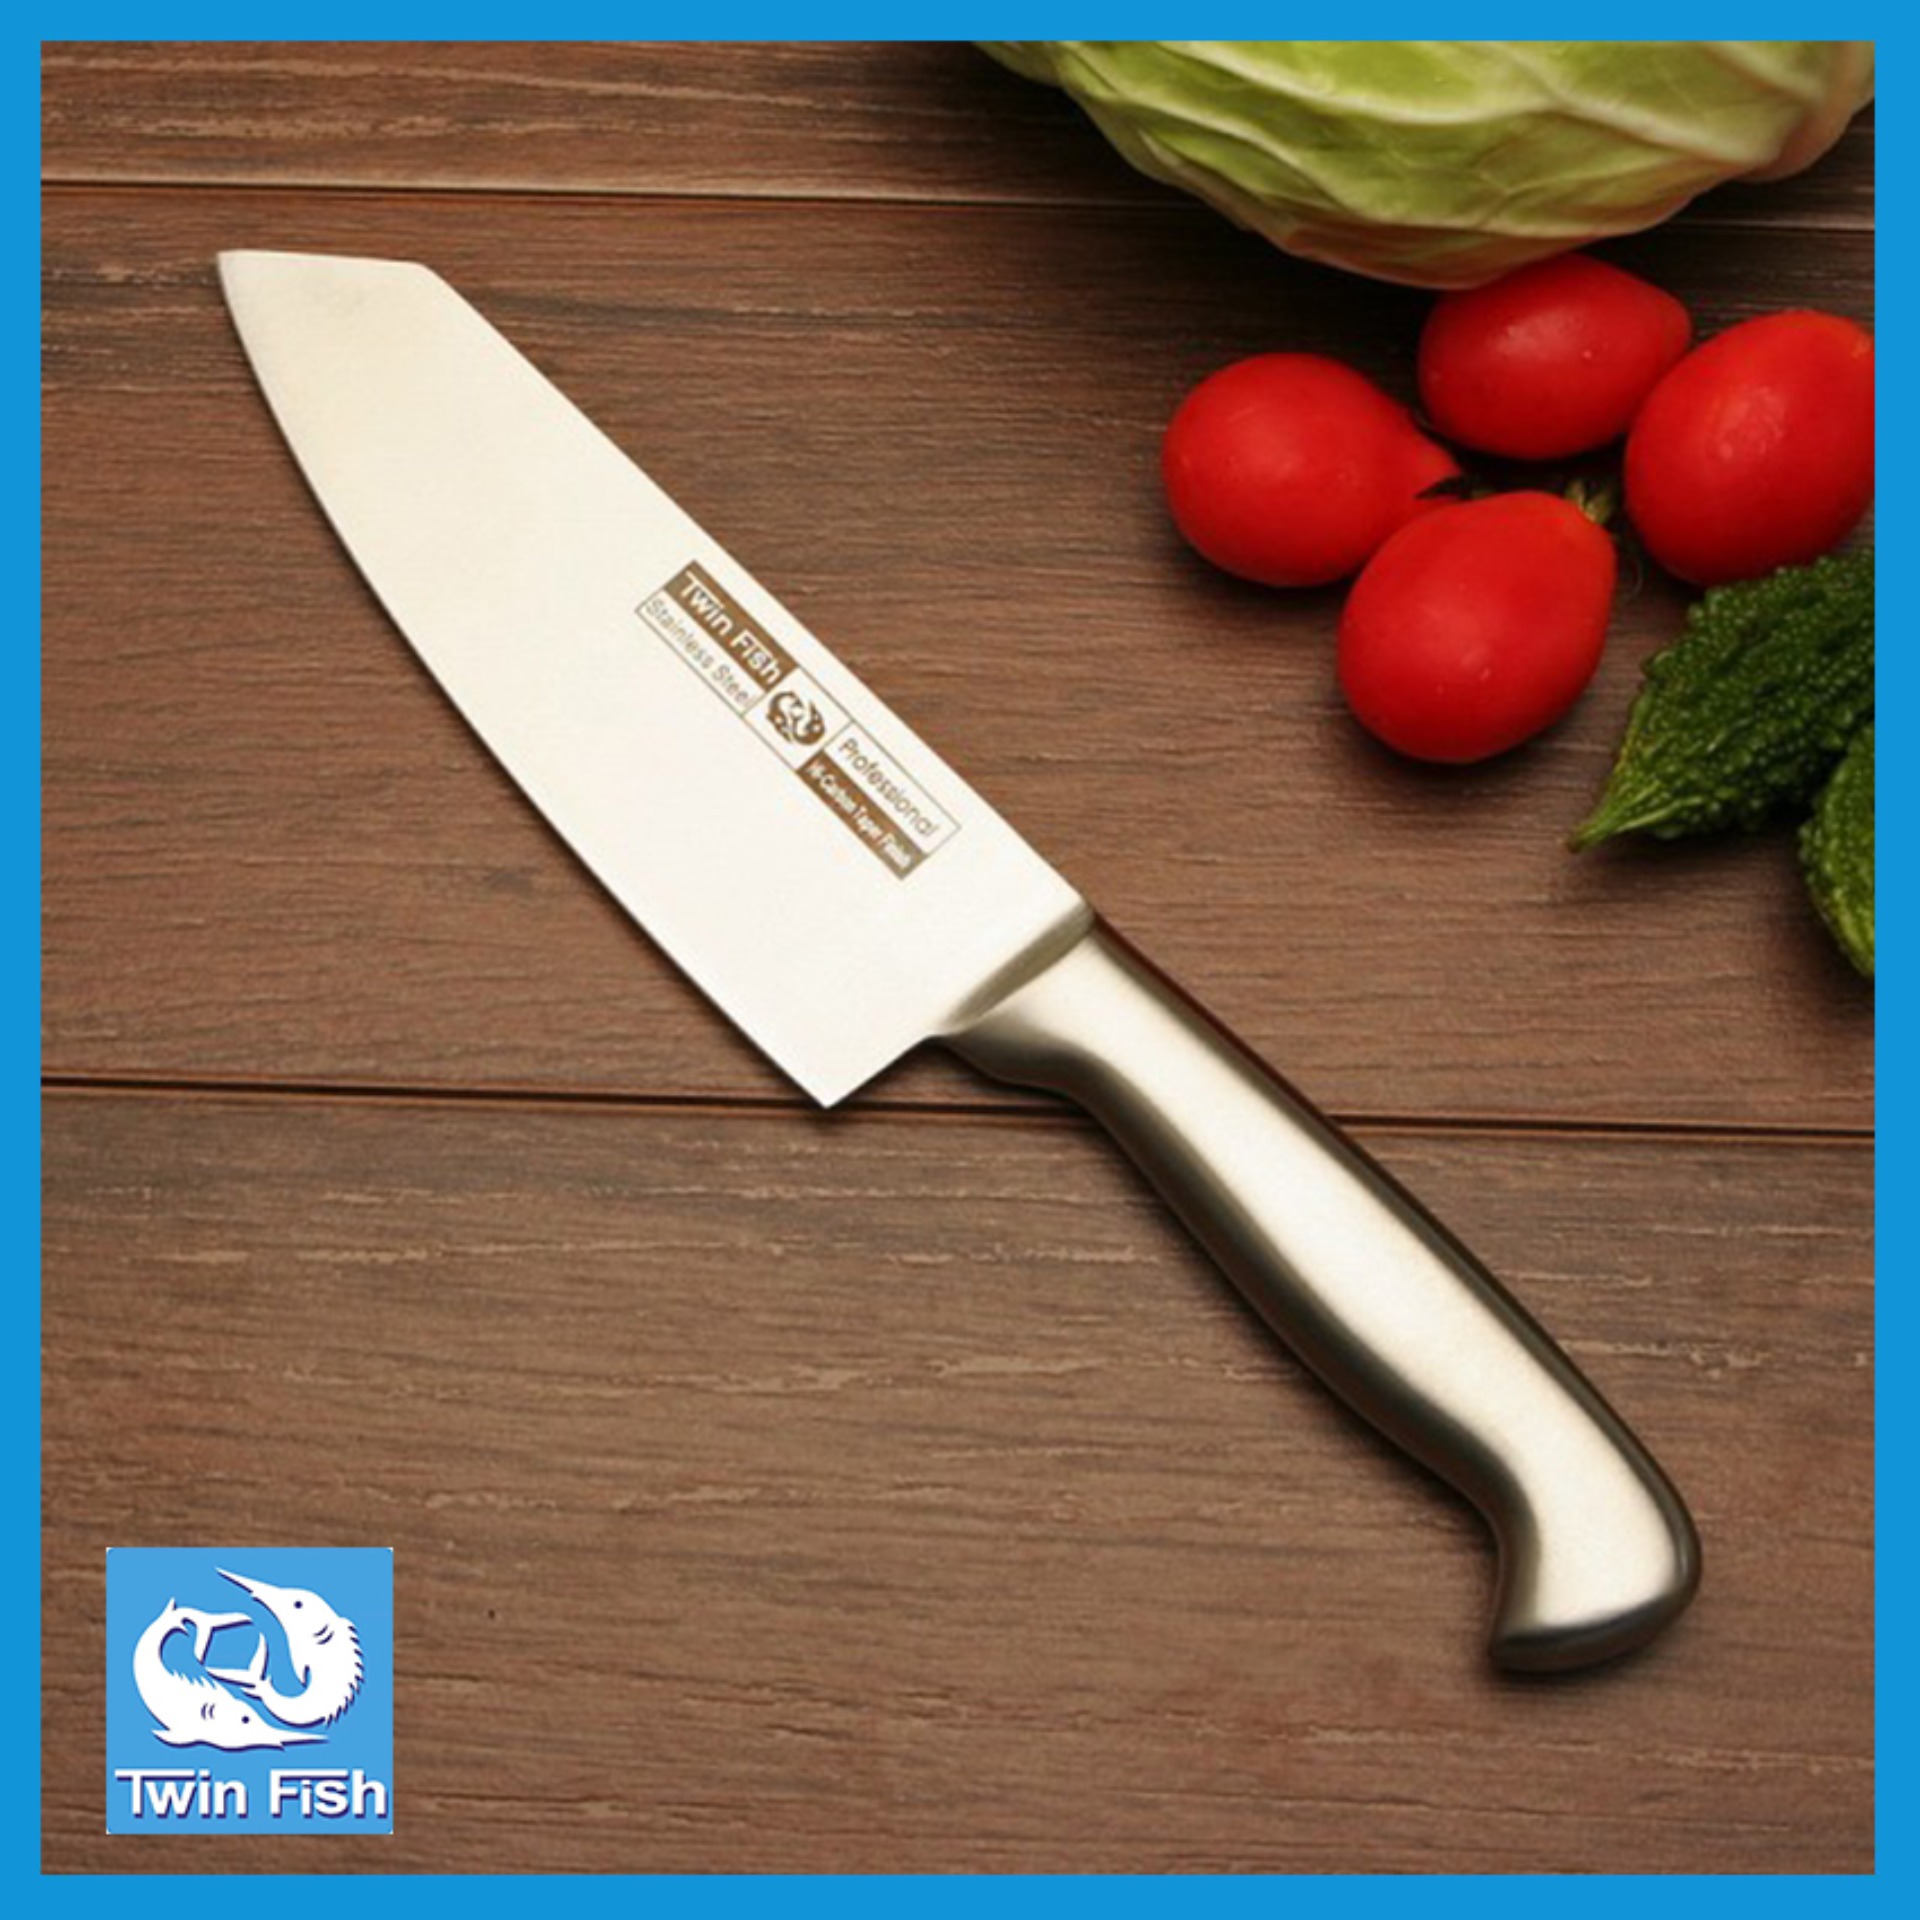 ส่งฟรี มีดหั่น มีดครัว ชุดมีดครัว Japanese Chef Knife ขนาด7นิ้ว แข็งแรง ทนทาน 9761/7 Twin Fish